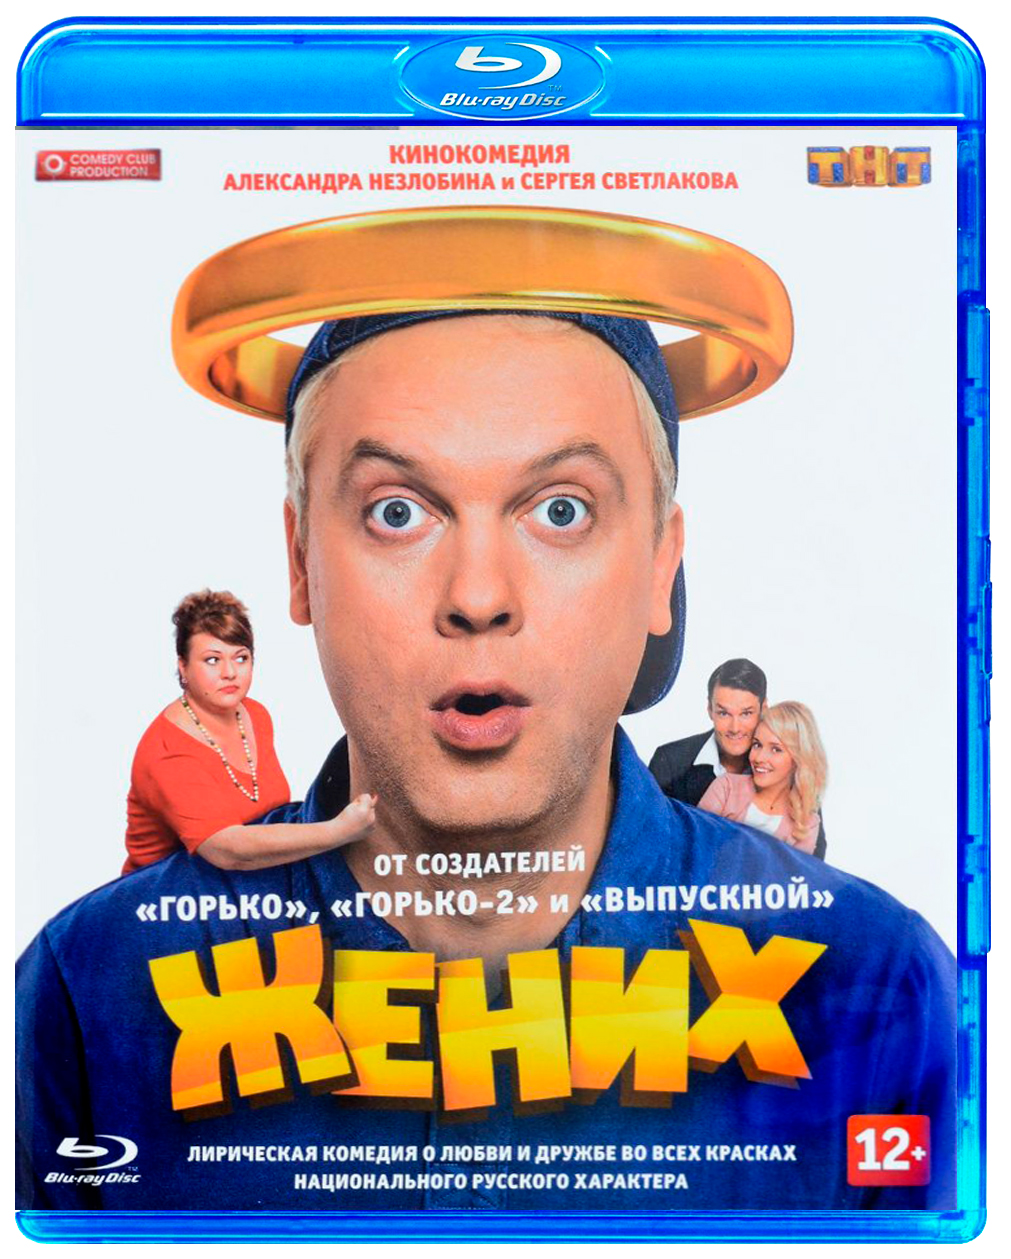 Комедии светлакова. Жених 2016. Комедии. Российские комедии. Жених (Blu-ray).